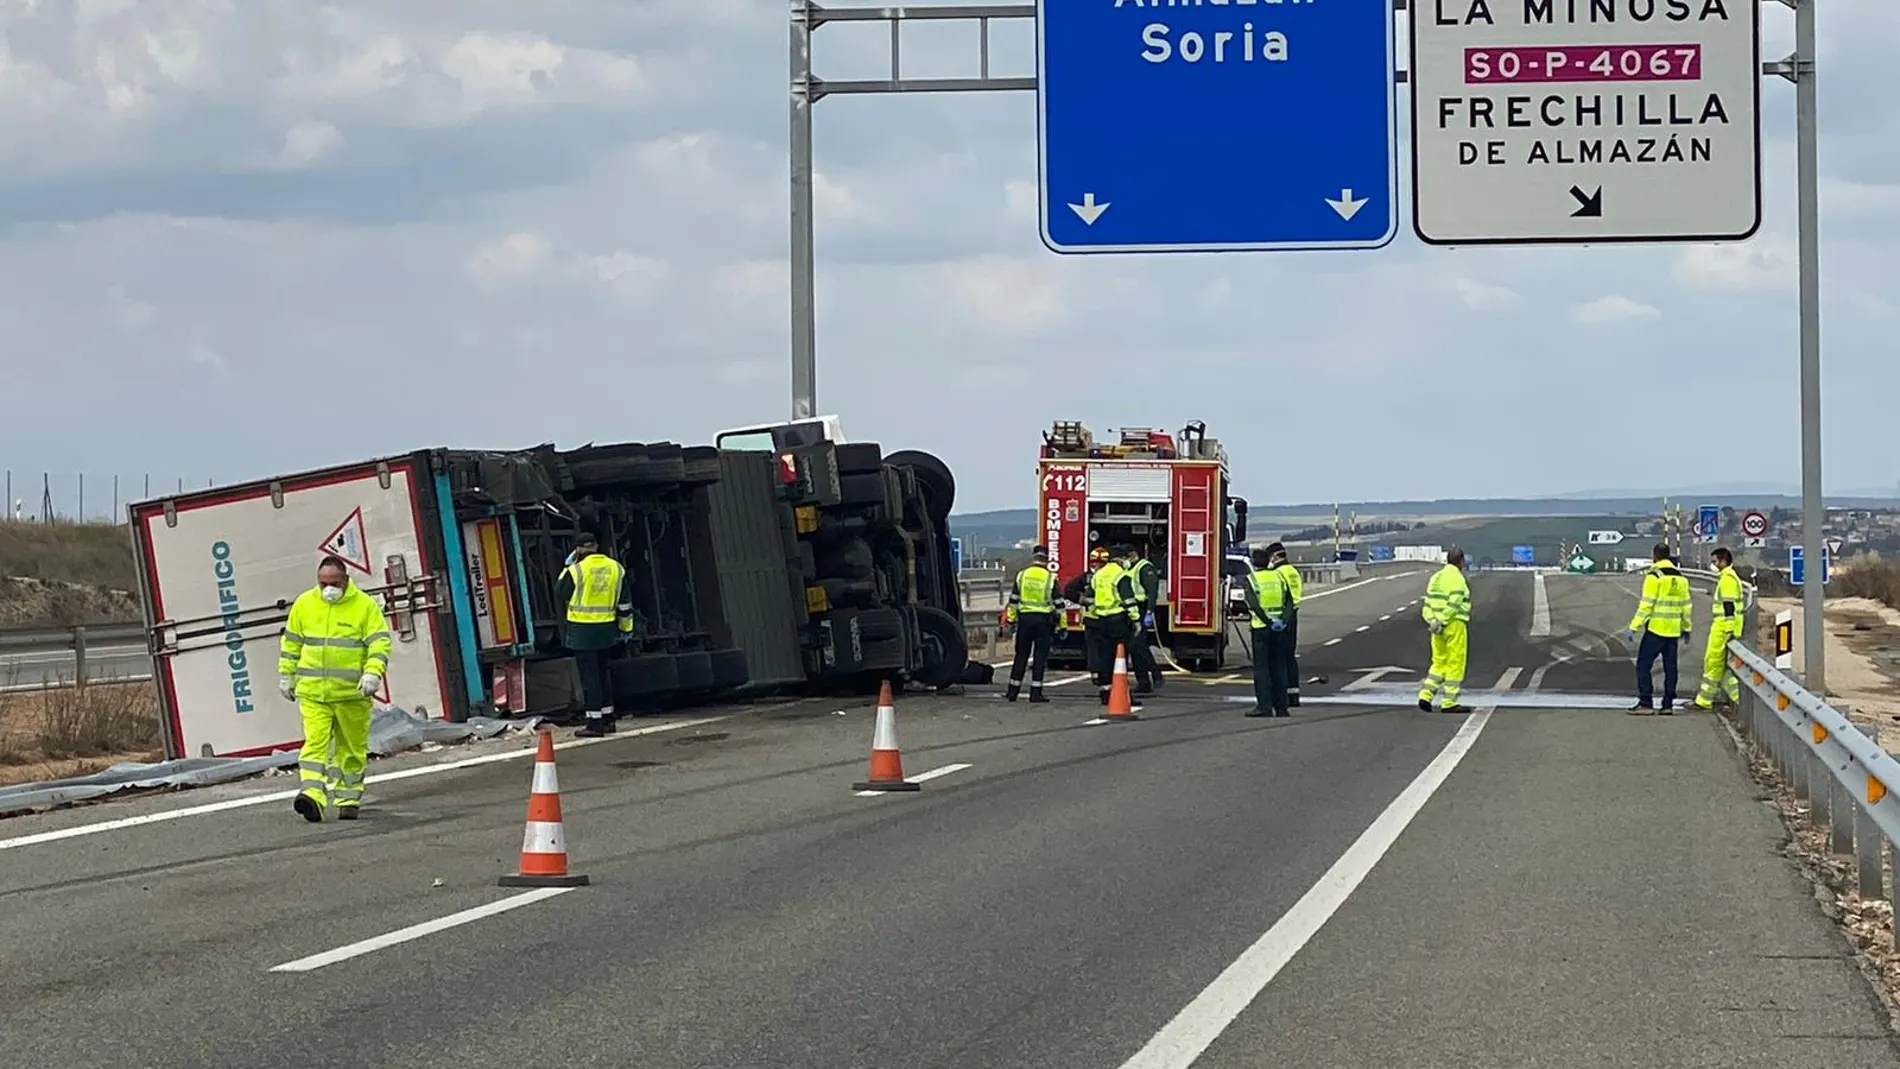 Accidente de tráfico de un camión al salirse de la vía en la A-15, en Frechilla de Almazán (Soria)